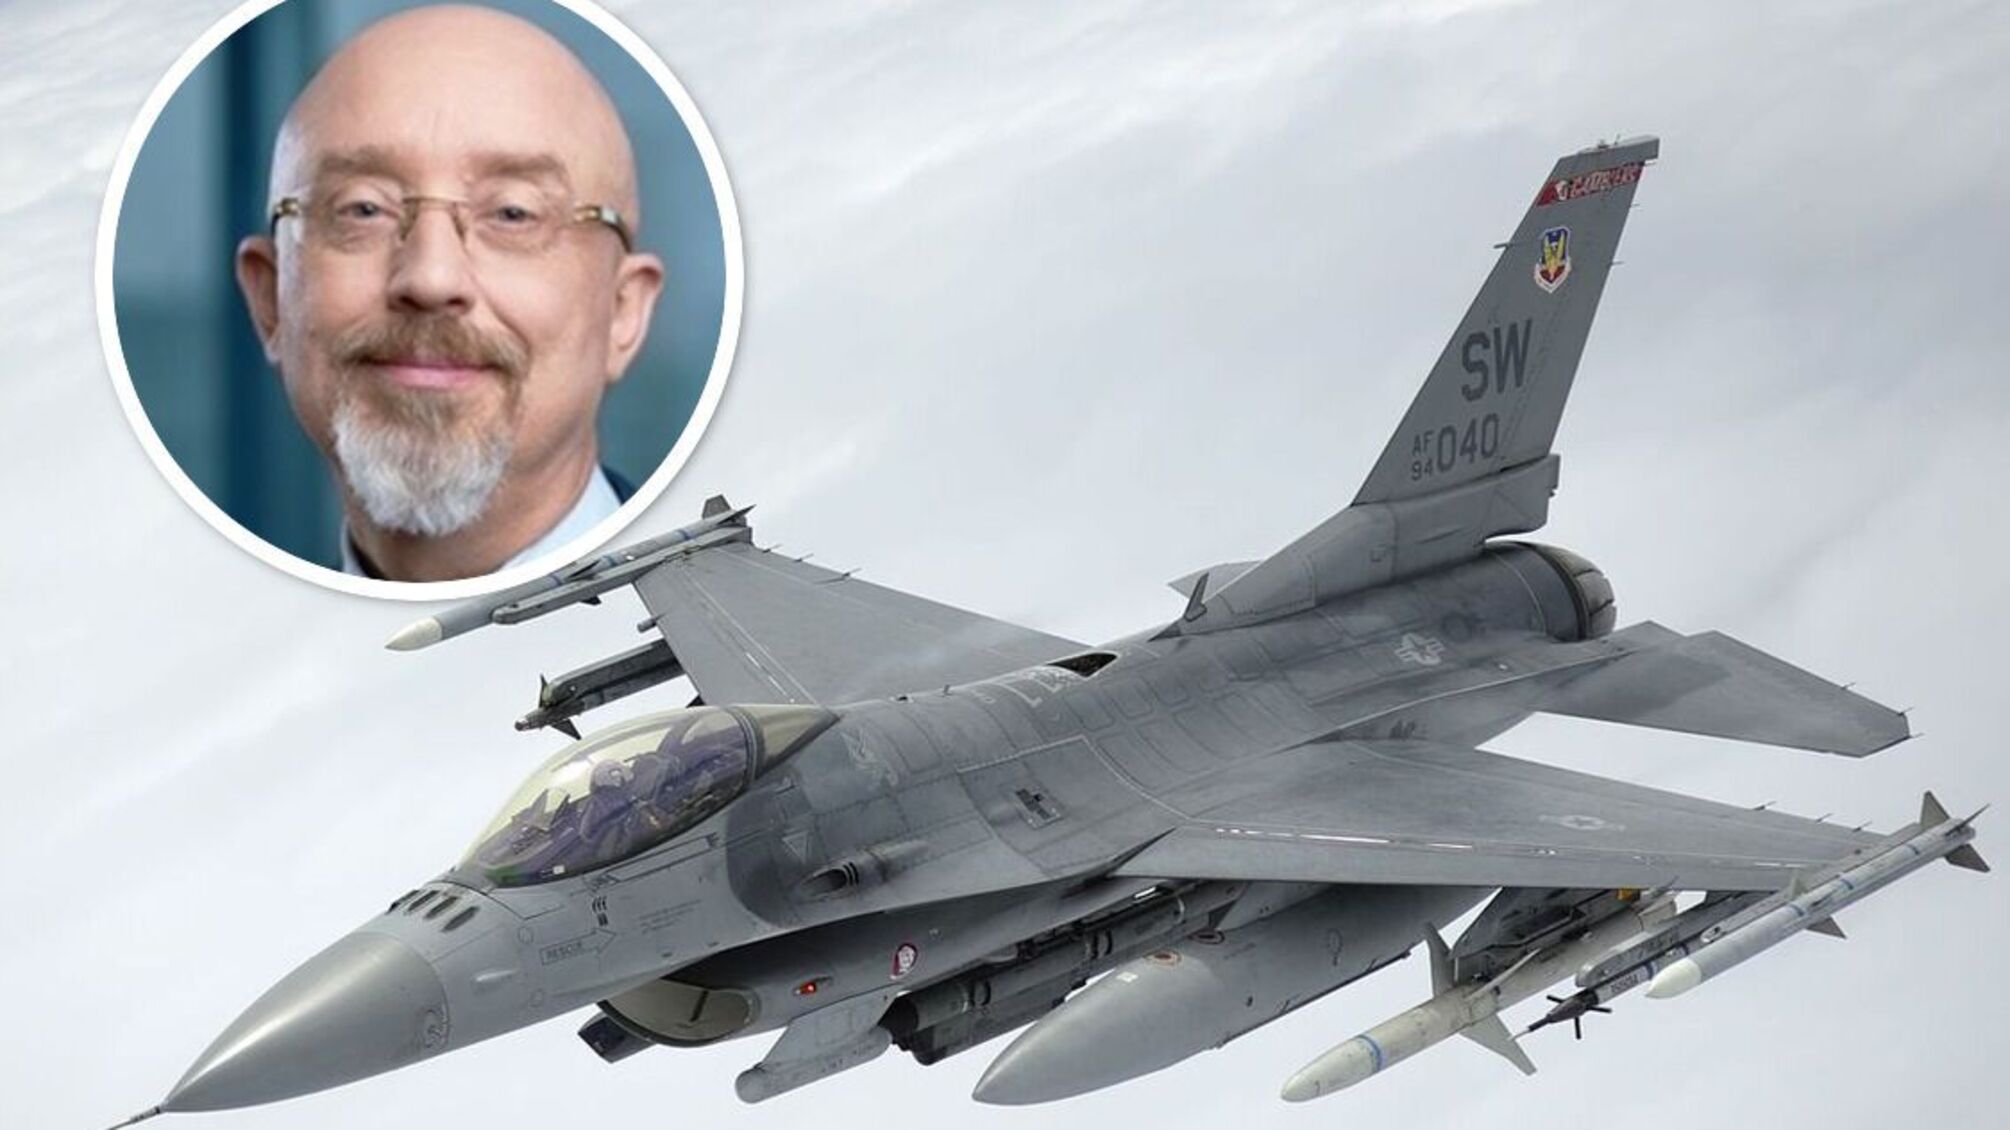 Україна отримає винищувачі F-16 після навчання пілотів, що вже почалося